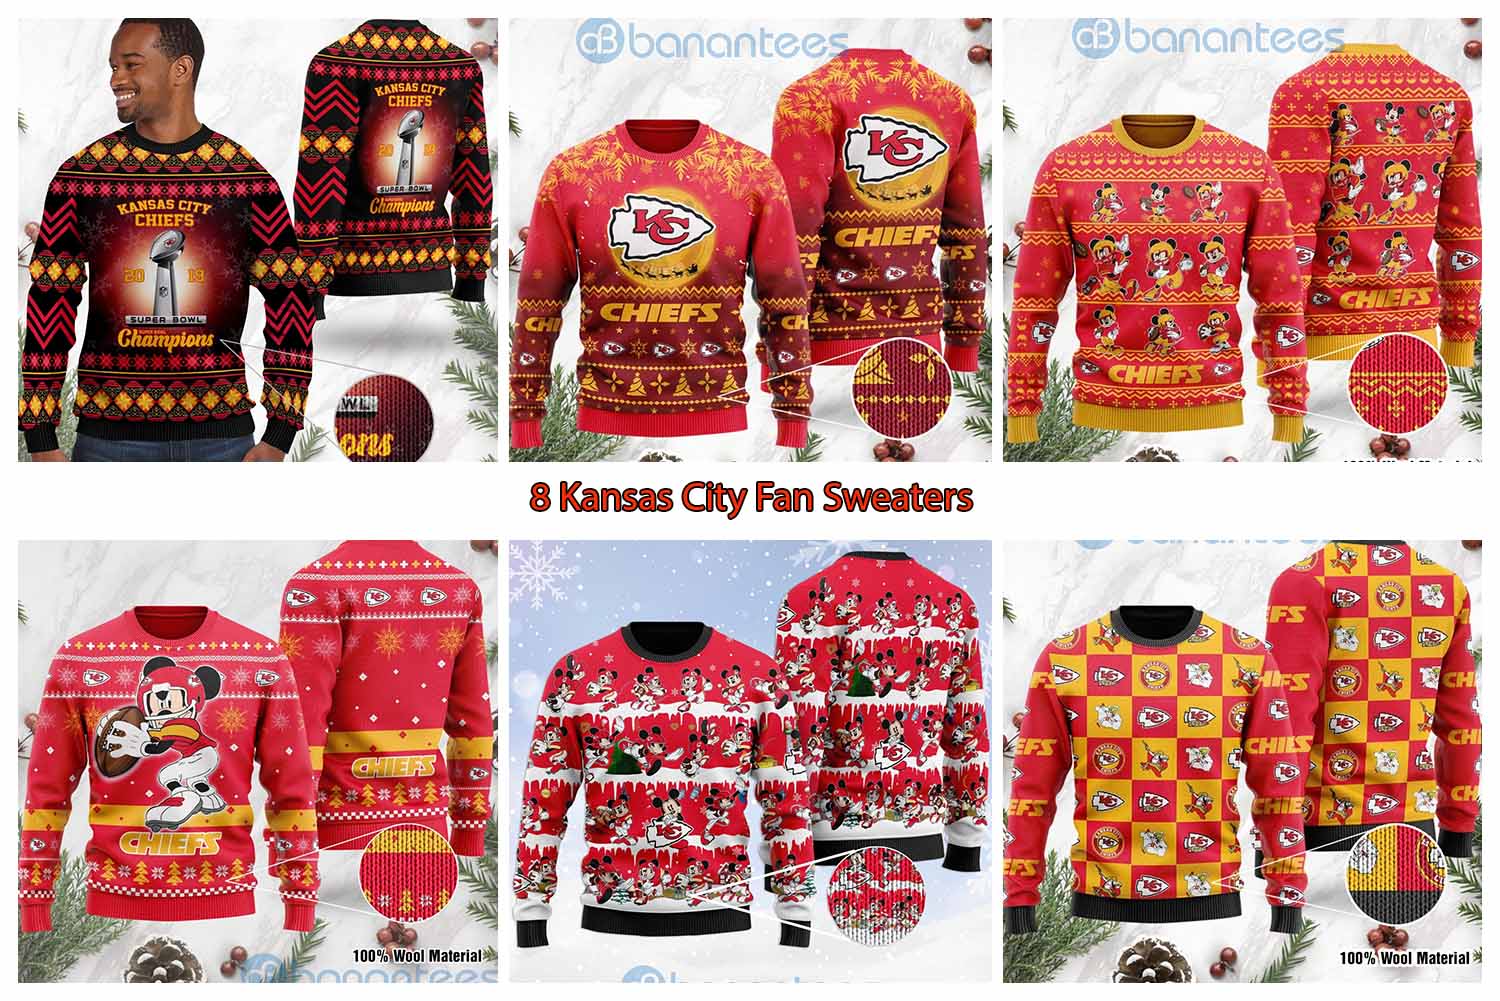 8 Kansas City Fan Sweaters